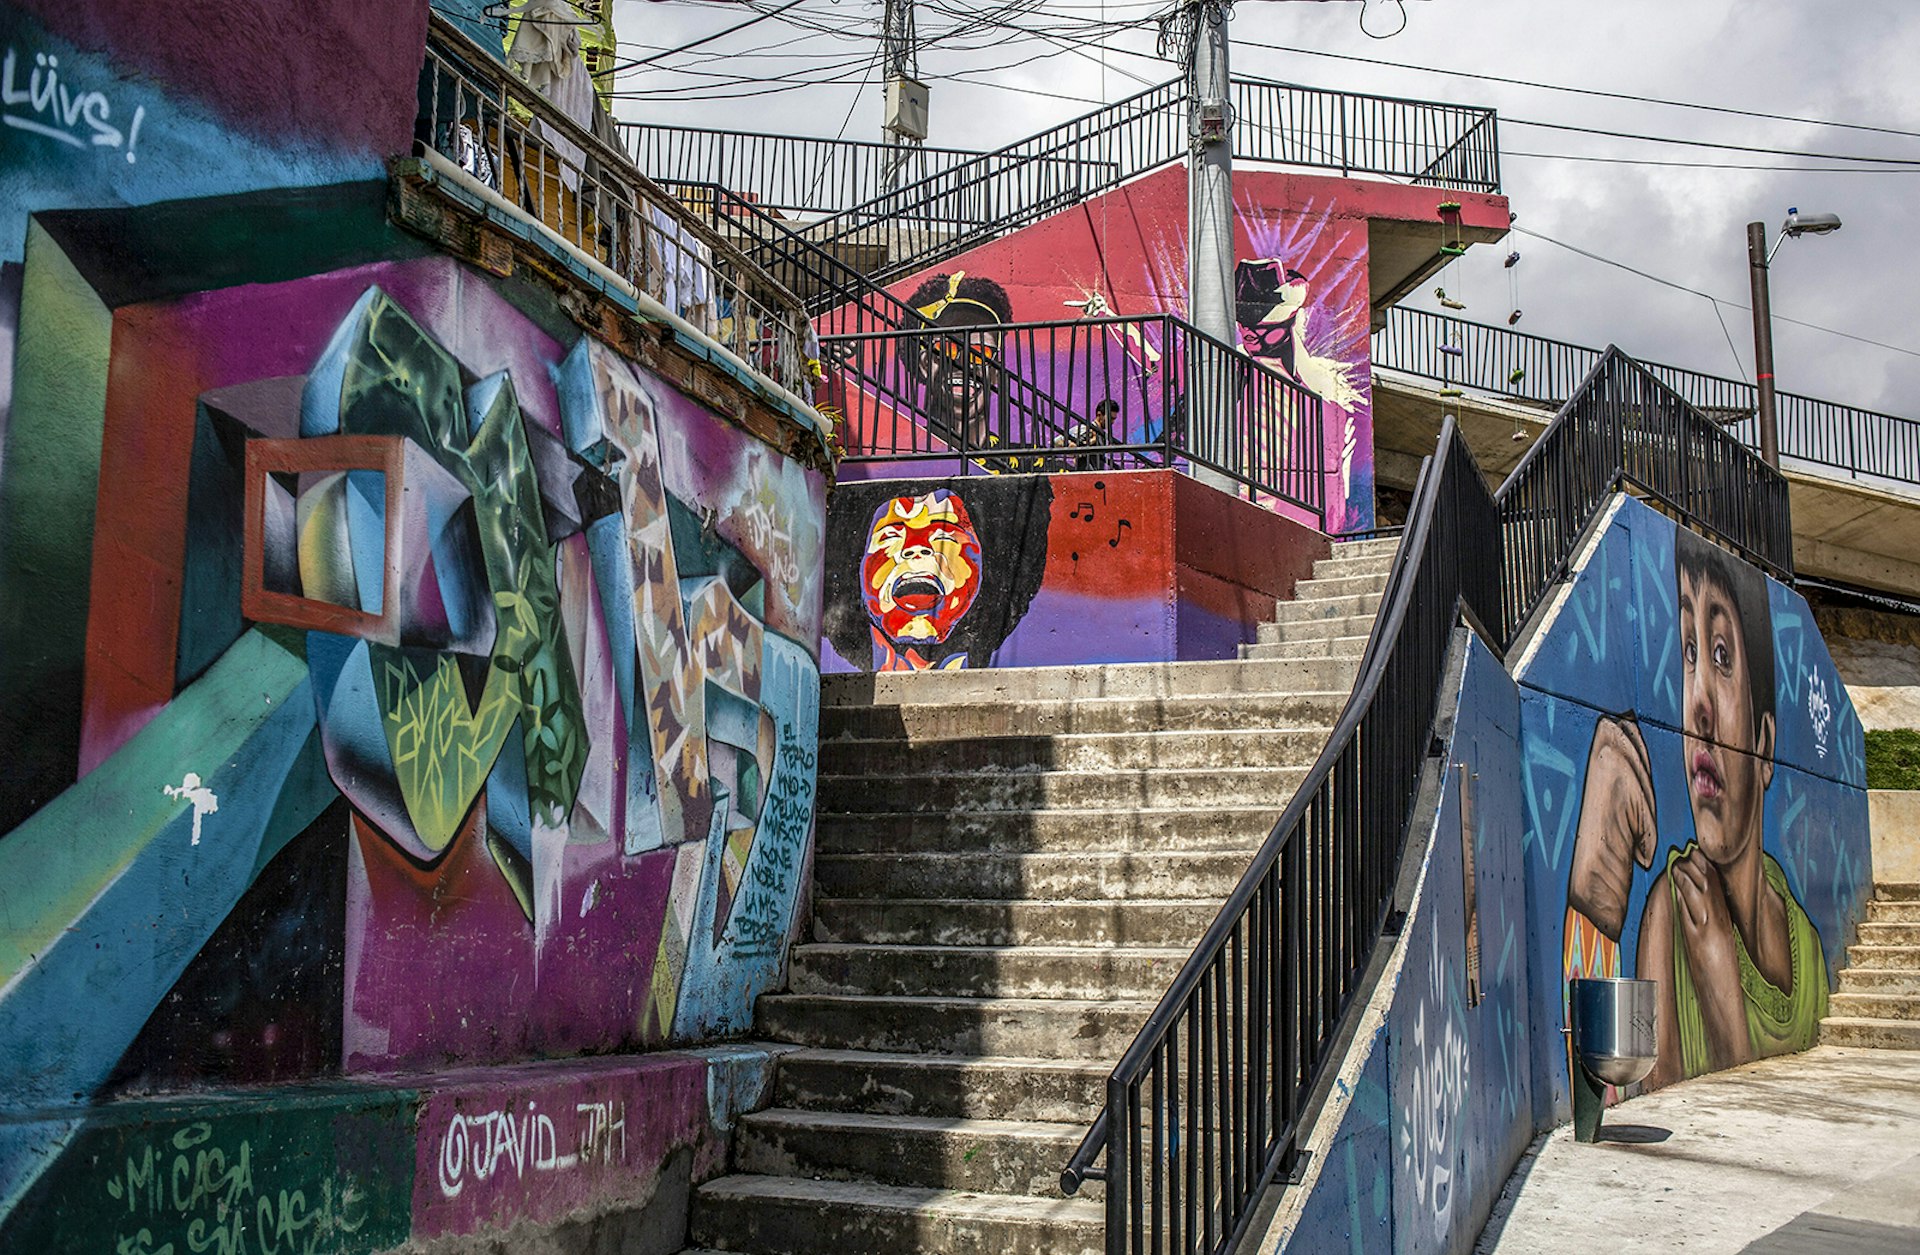 Street art murals cover concrete walls around in a stairway in Medellín